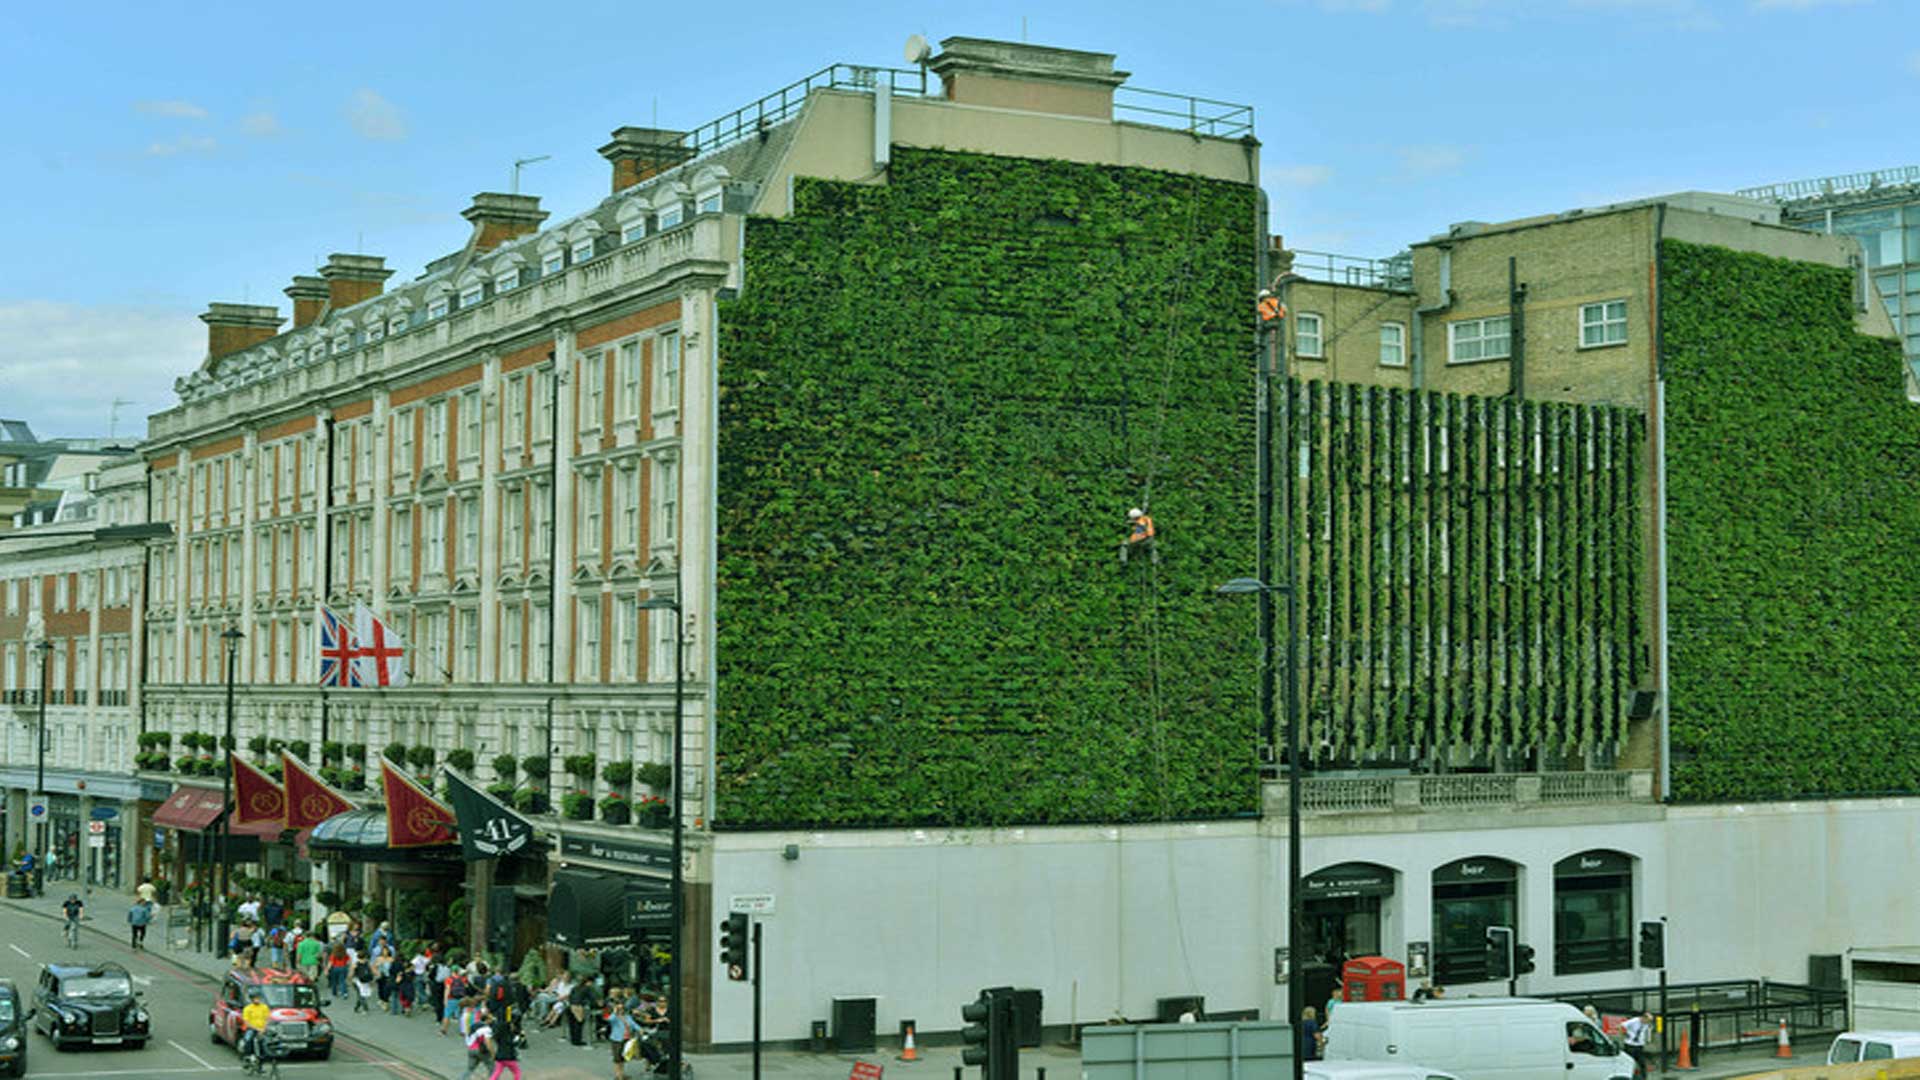 اجرای دیوار سبز